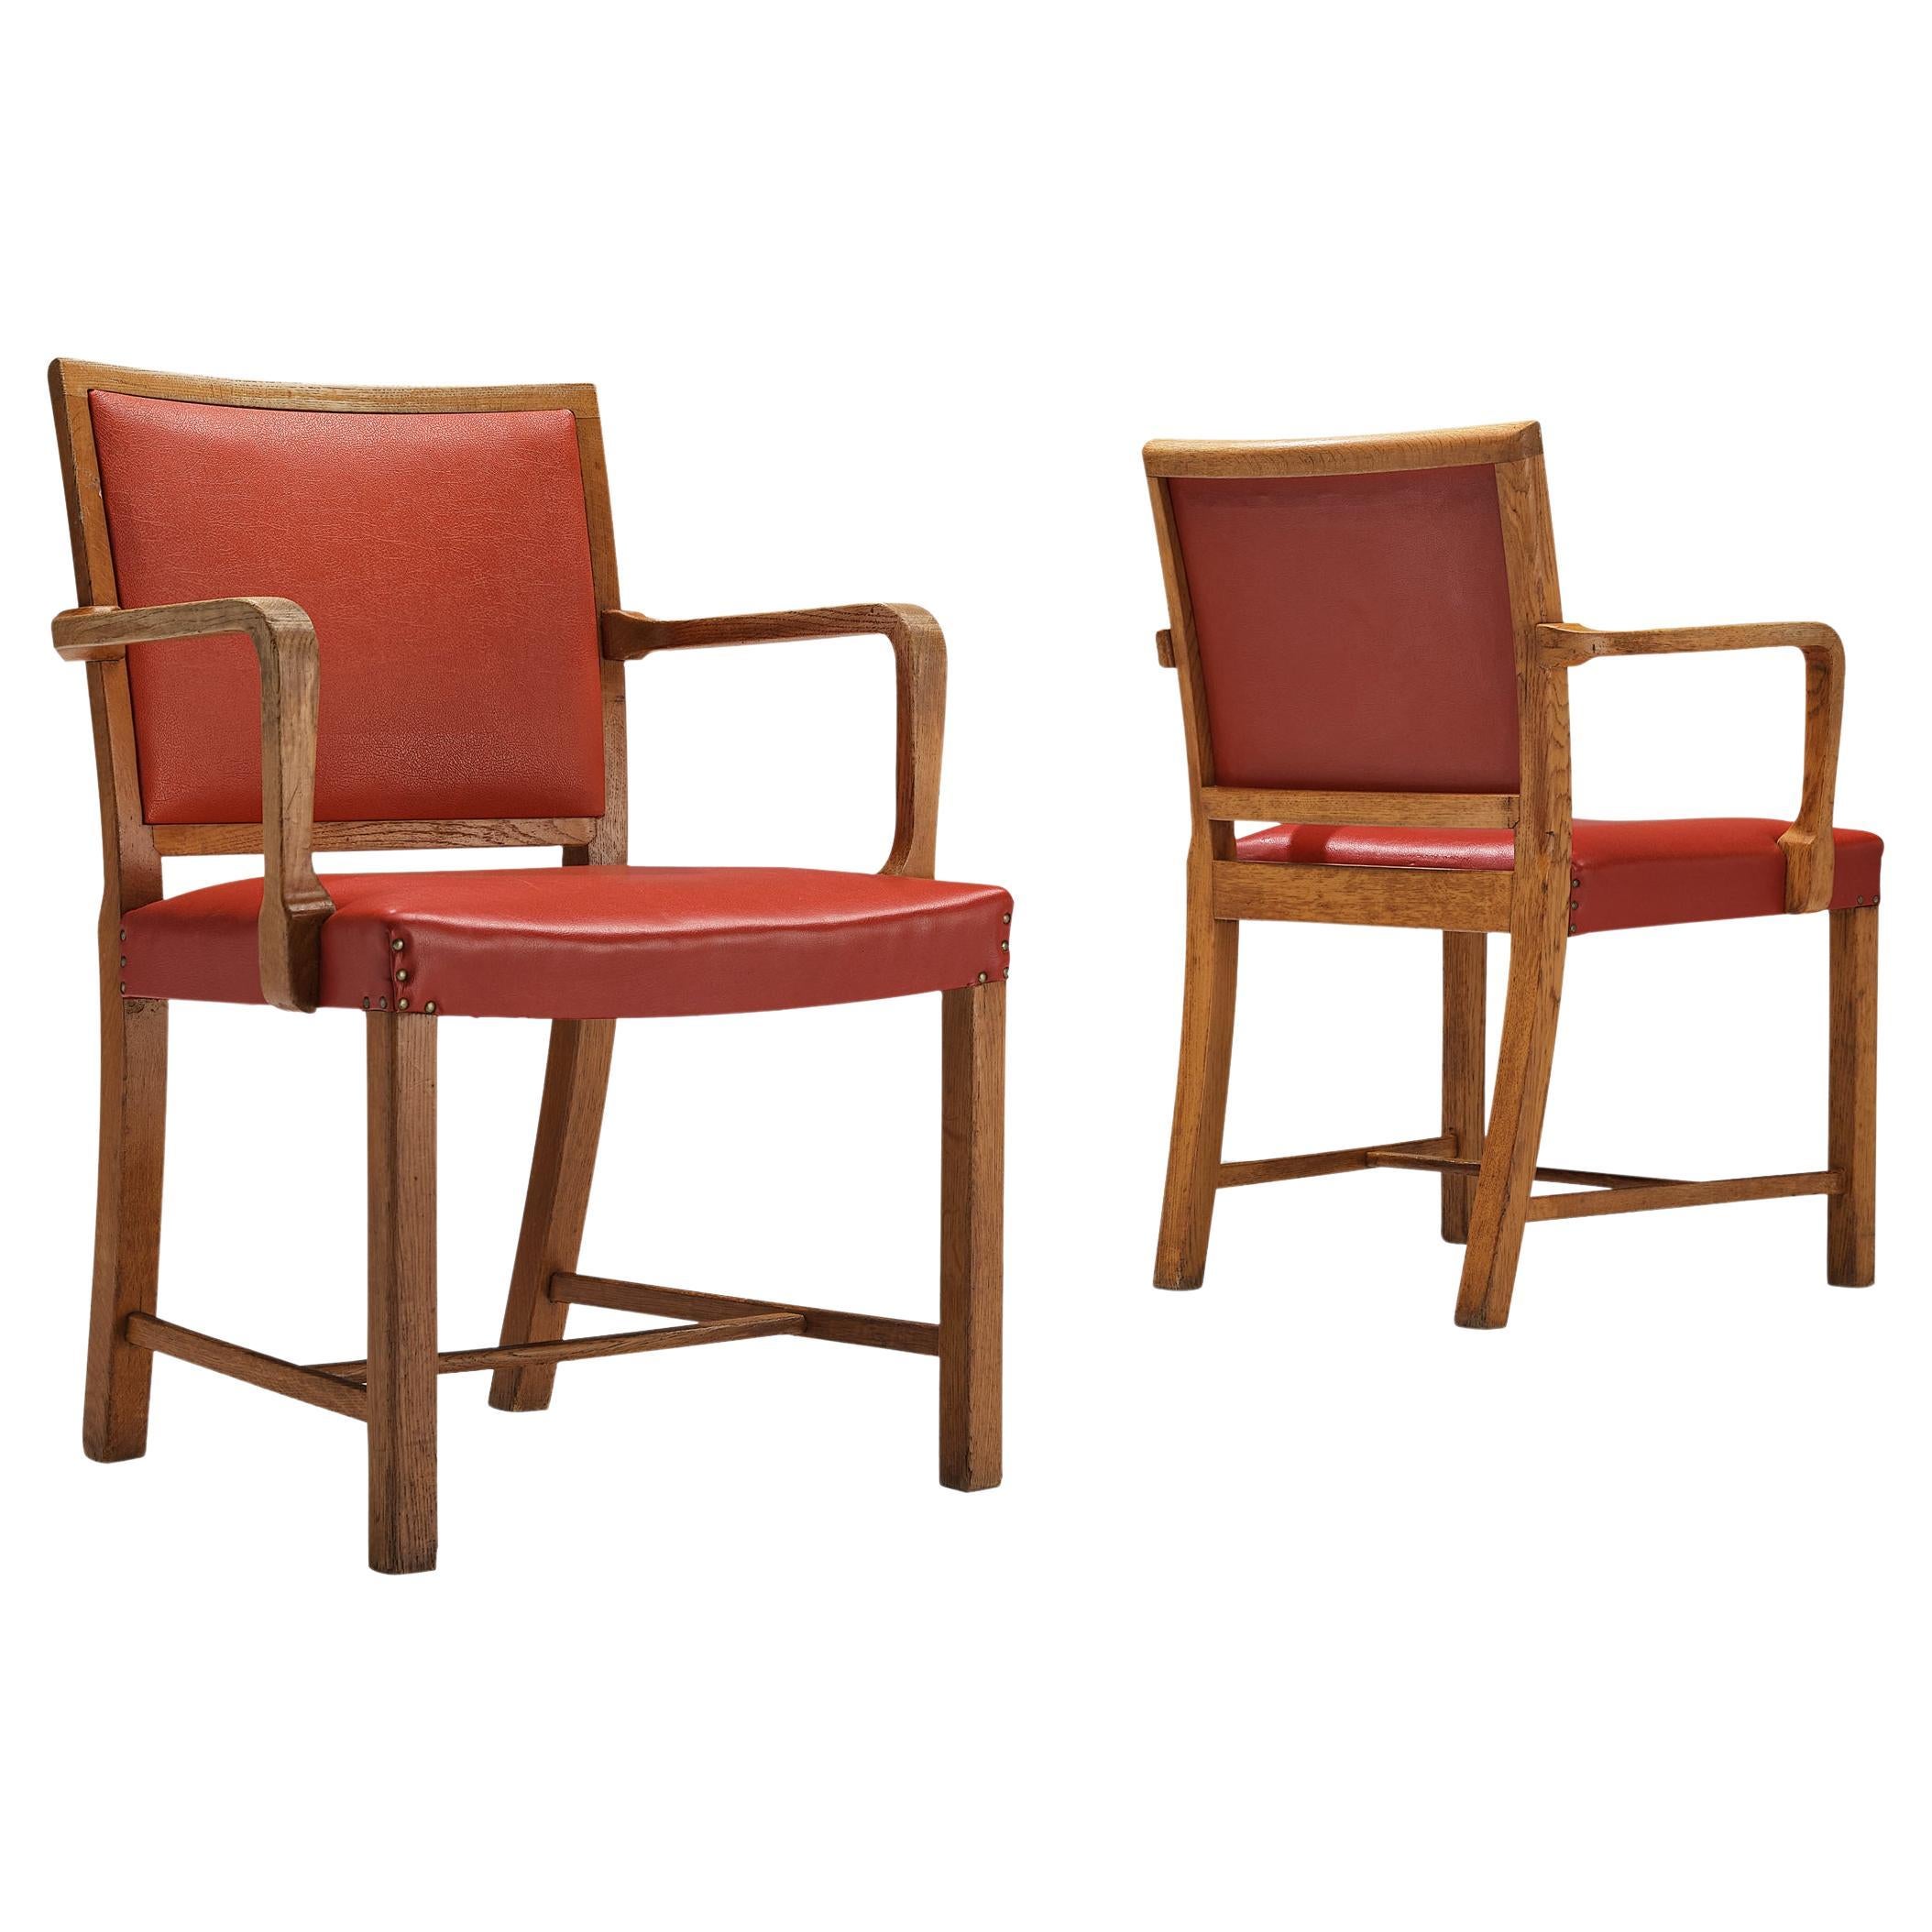 Ein elegantes Paar Sessel aus Eiche und rotem Leder